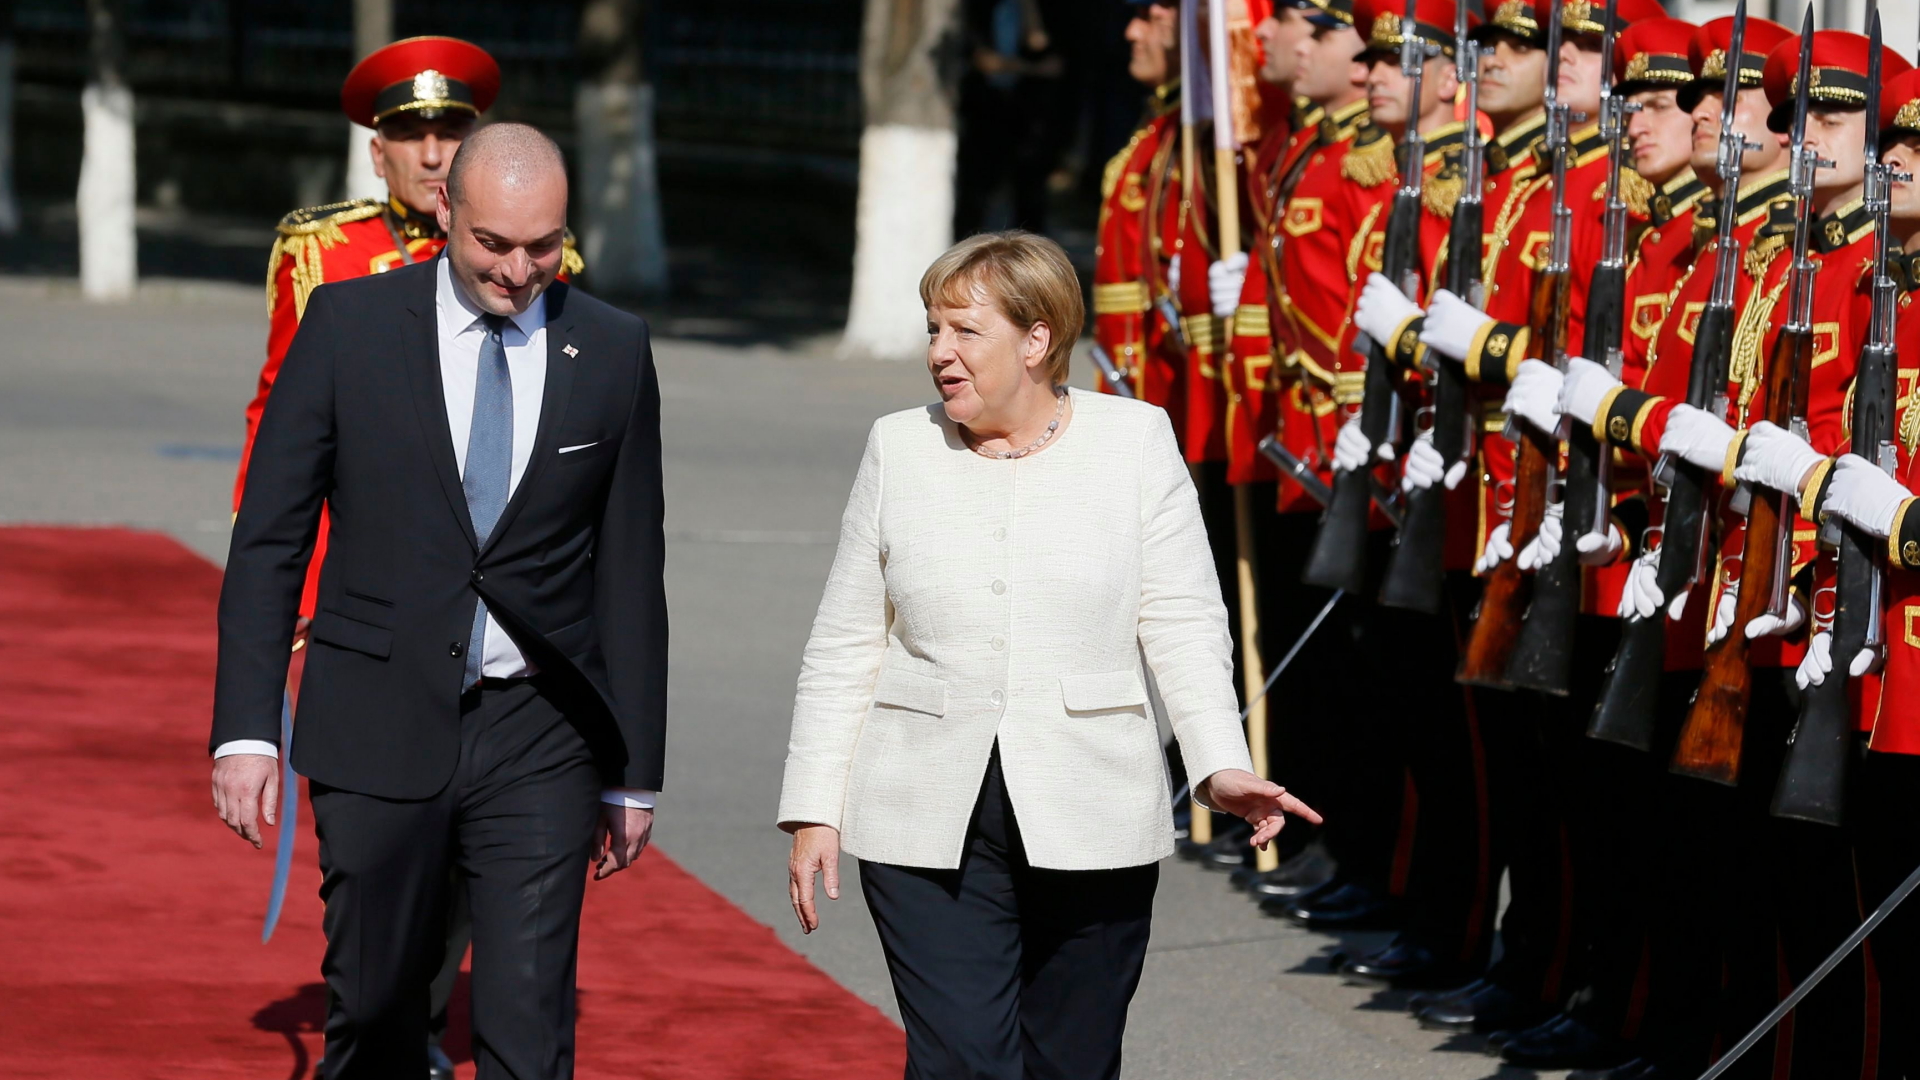 Kanzlerin Merkel wird vom georgischen Ministerpräsidenten Bachtadse empfangen. | ZURAB KURTSIKIDZE/EPA-EFE/REX/Sh